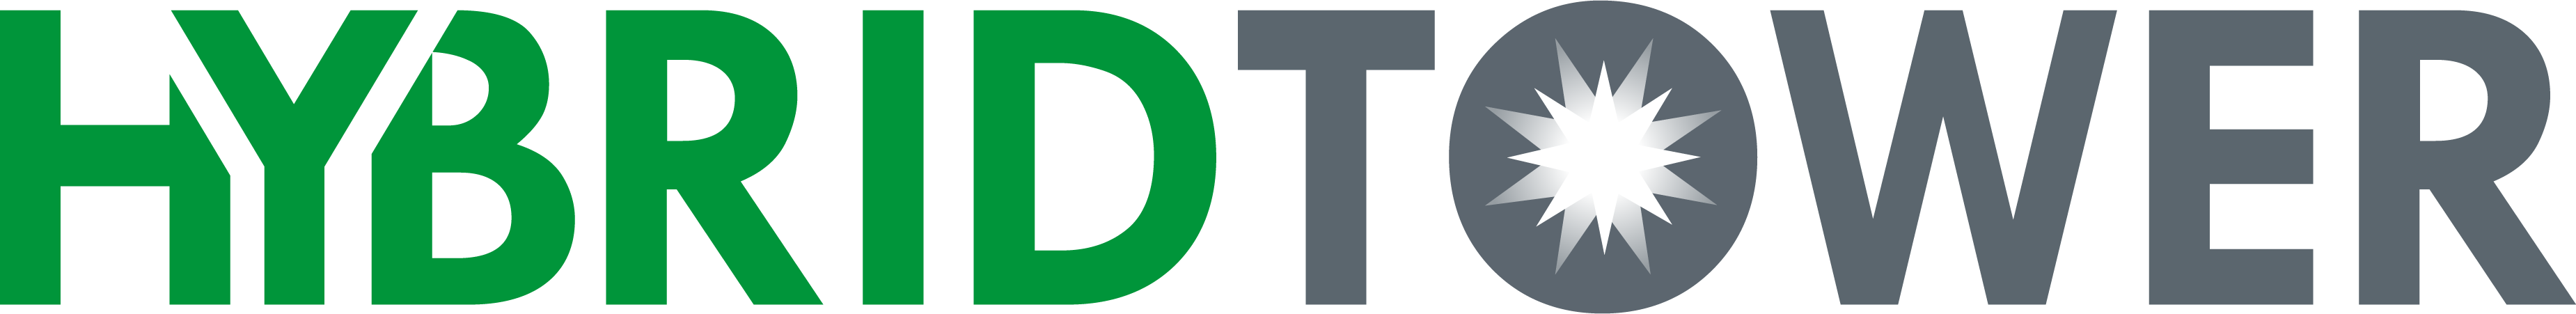 Hybrid Tower Logo